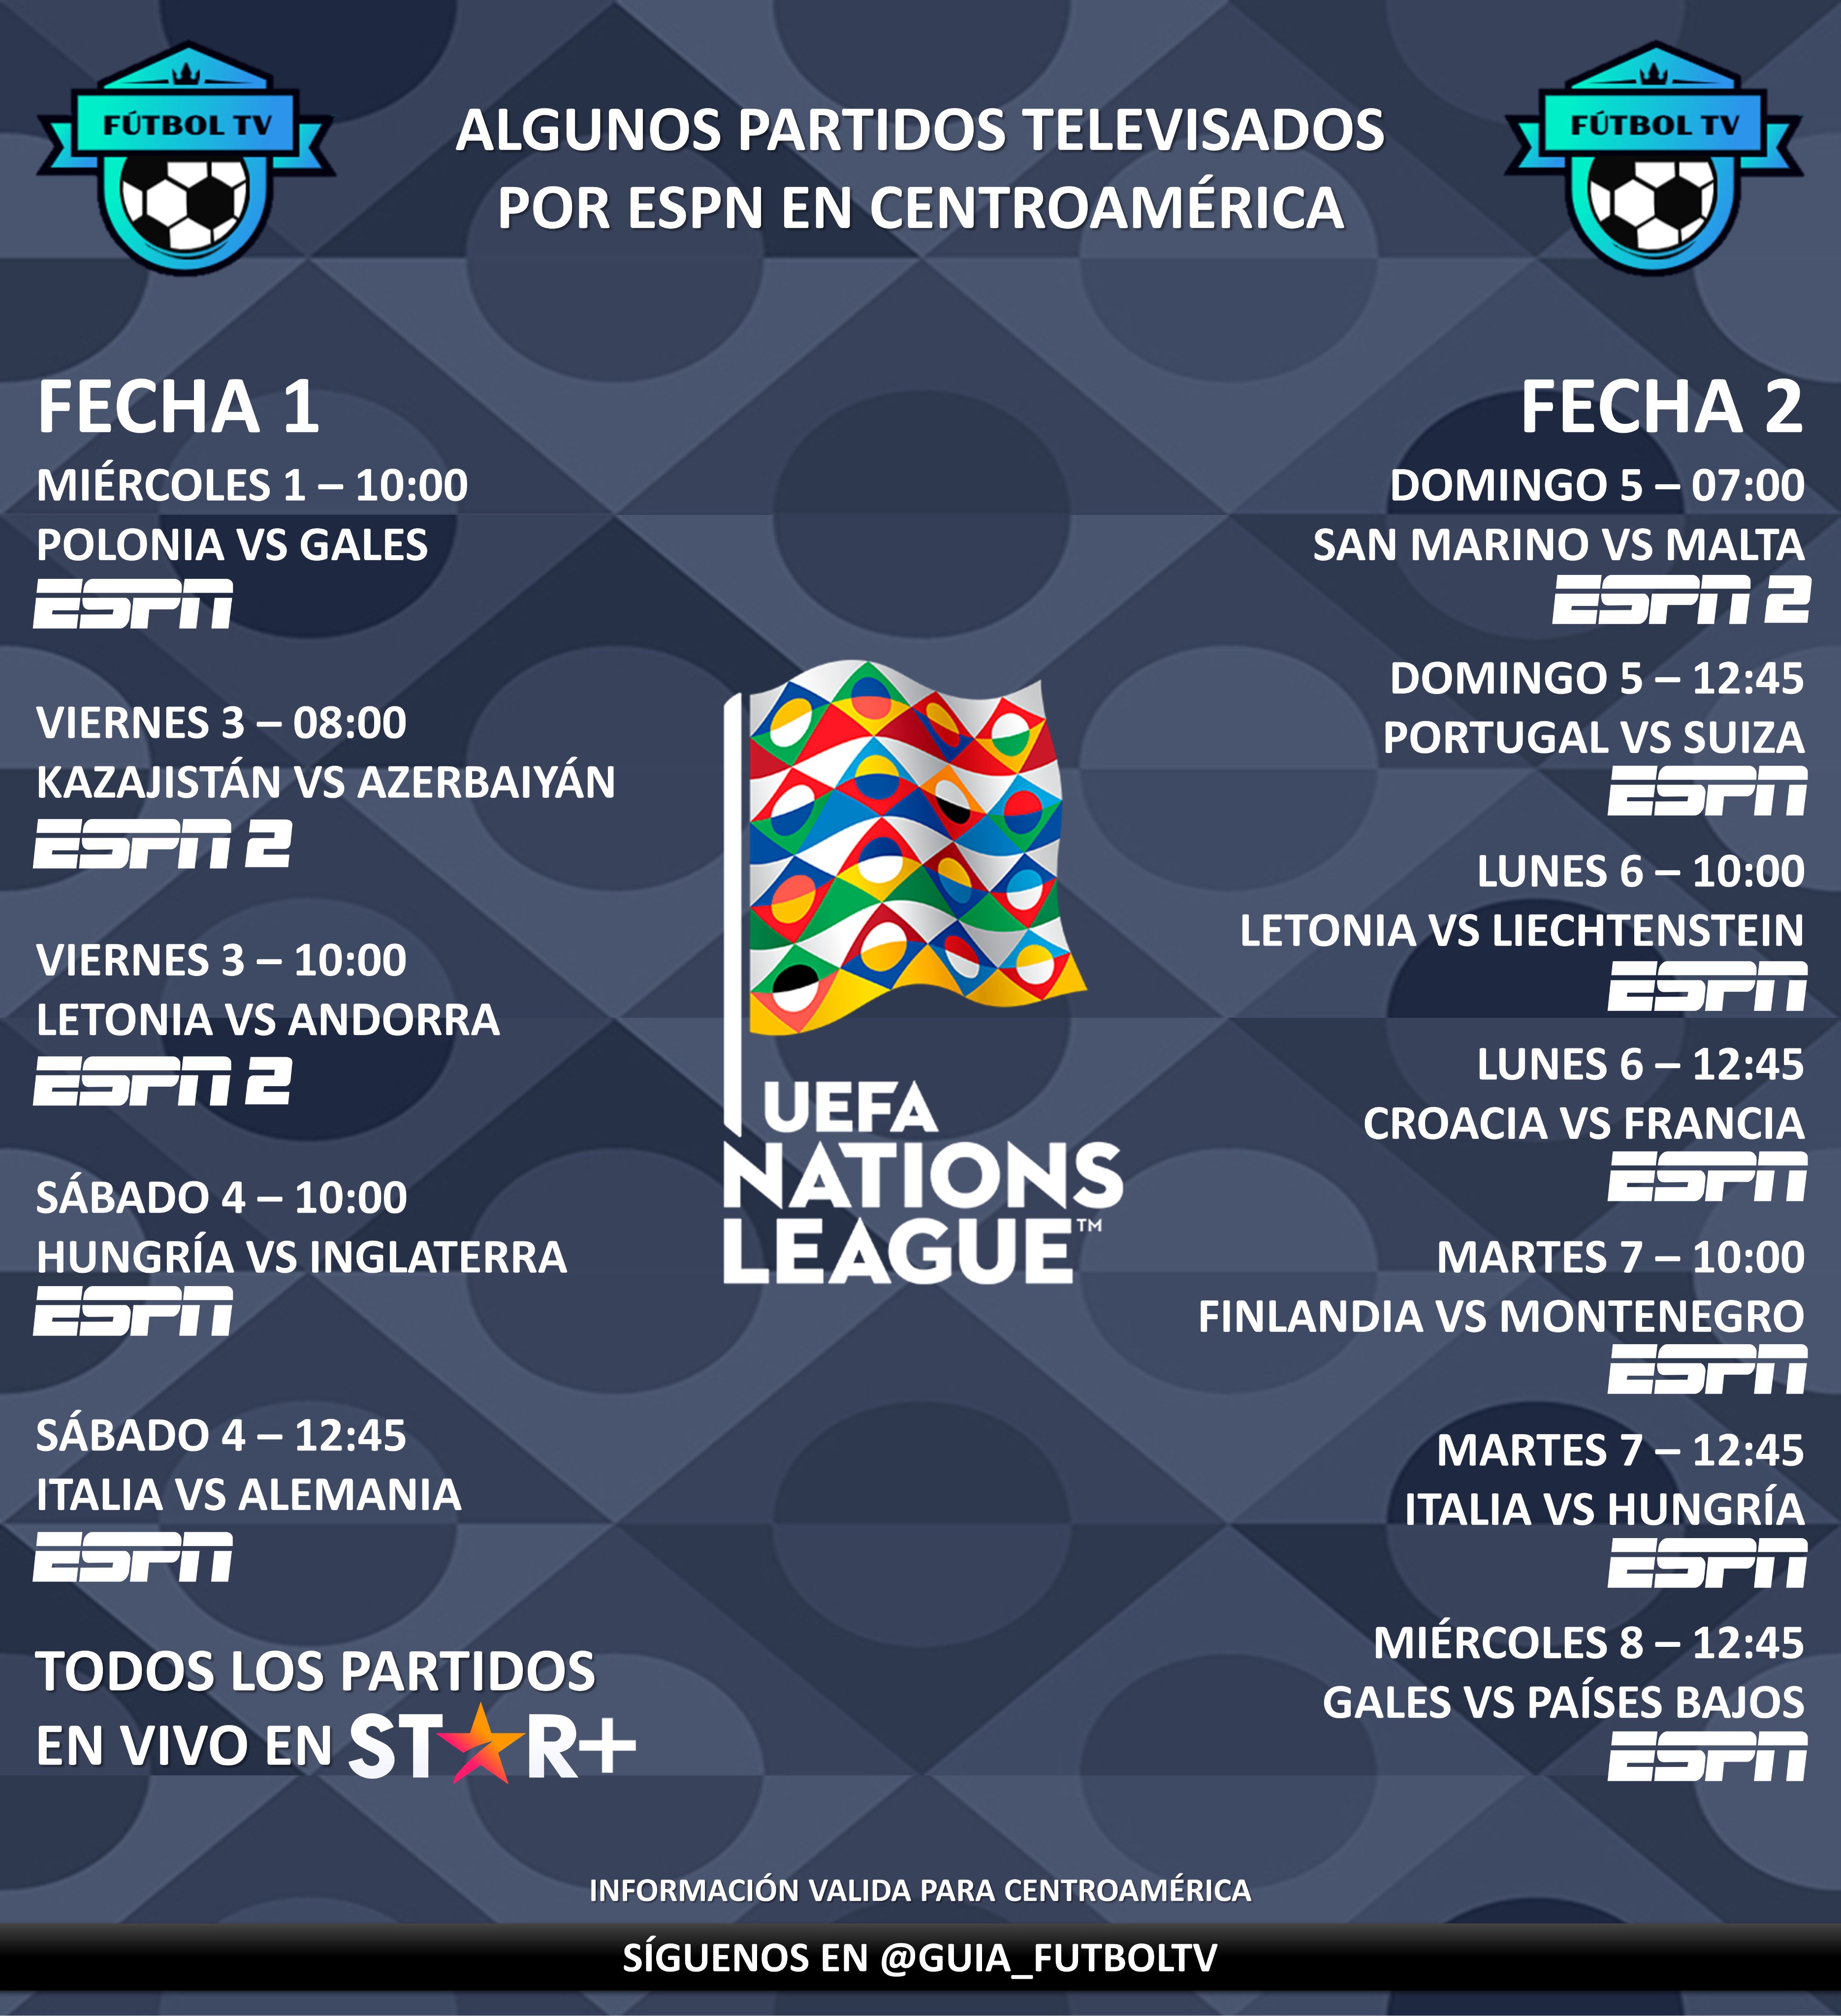 Fútbol TV on Twitter: "Les algunos partidos televisados de la UEFA Nations League (Fechas 1 2) por ESPN en Centroamérica. que todos los partidos estarán disponibles en @StarPlusLA (algunos